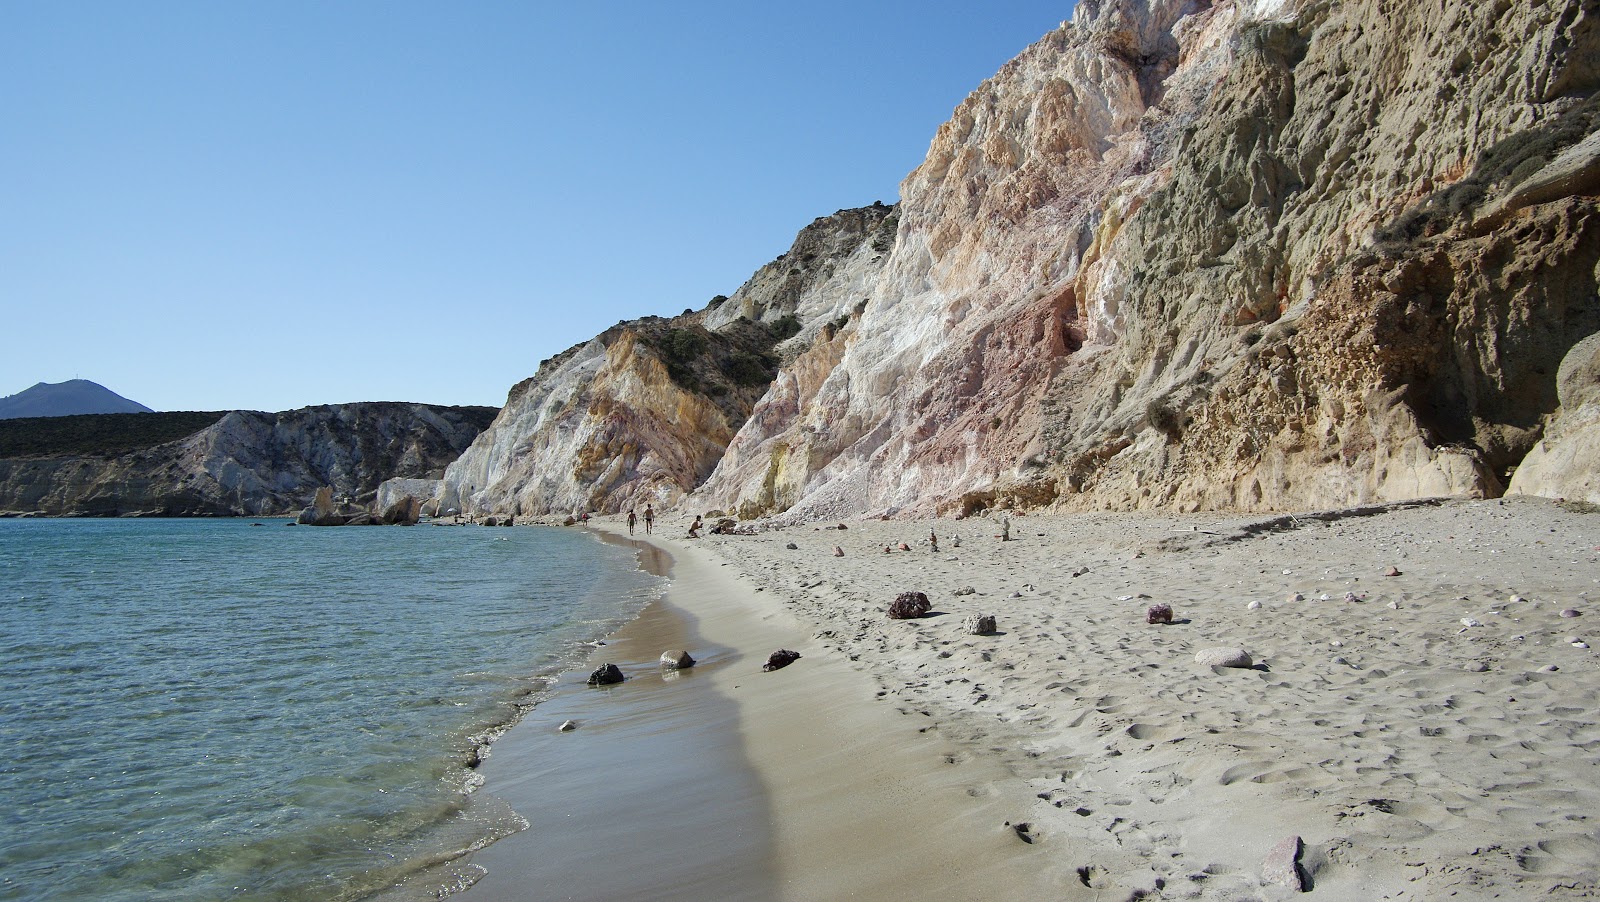 Firiplaka beach'in fotoğrafı geniş plaj ile birlikte